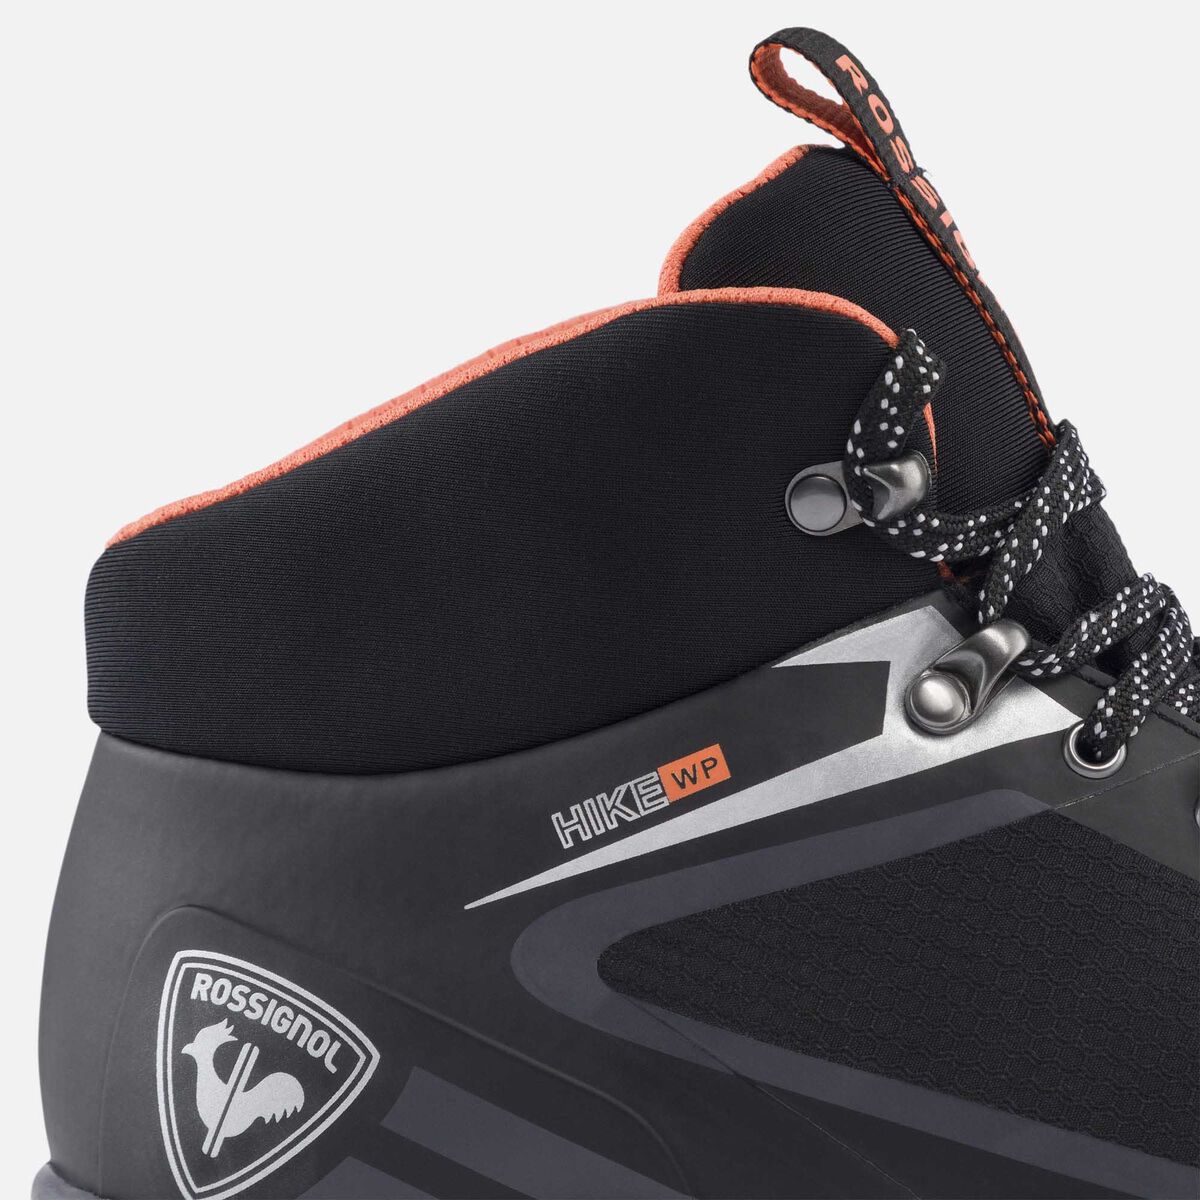 Men's black waterproof hiking shoes